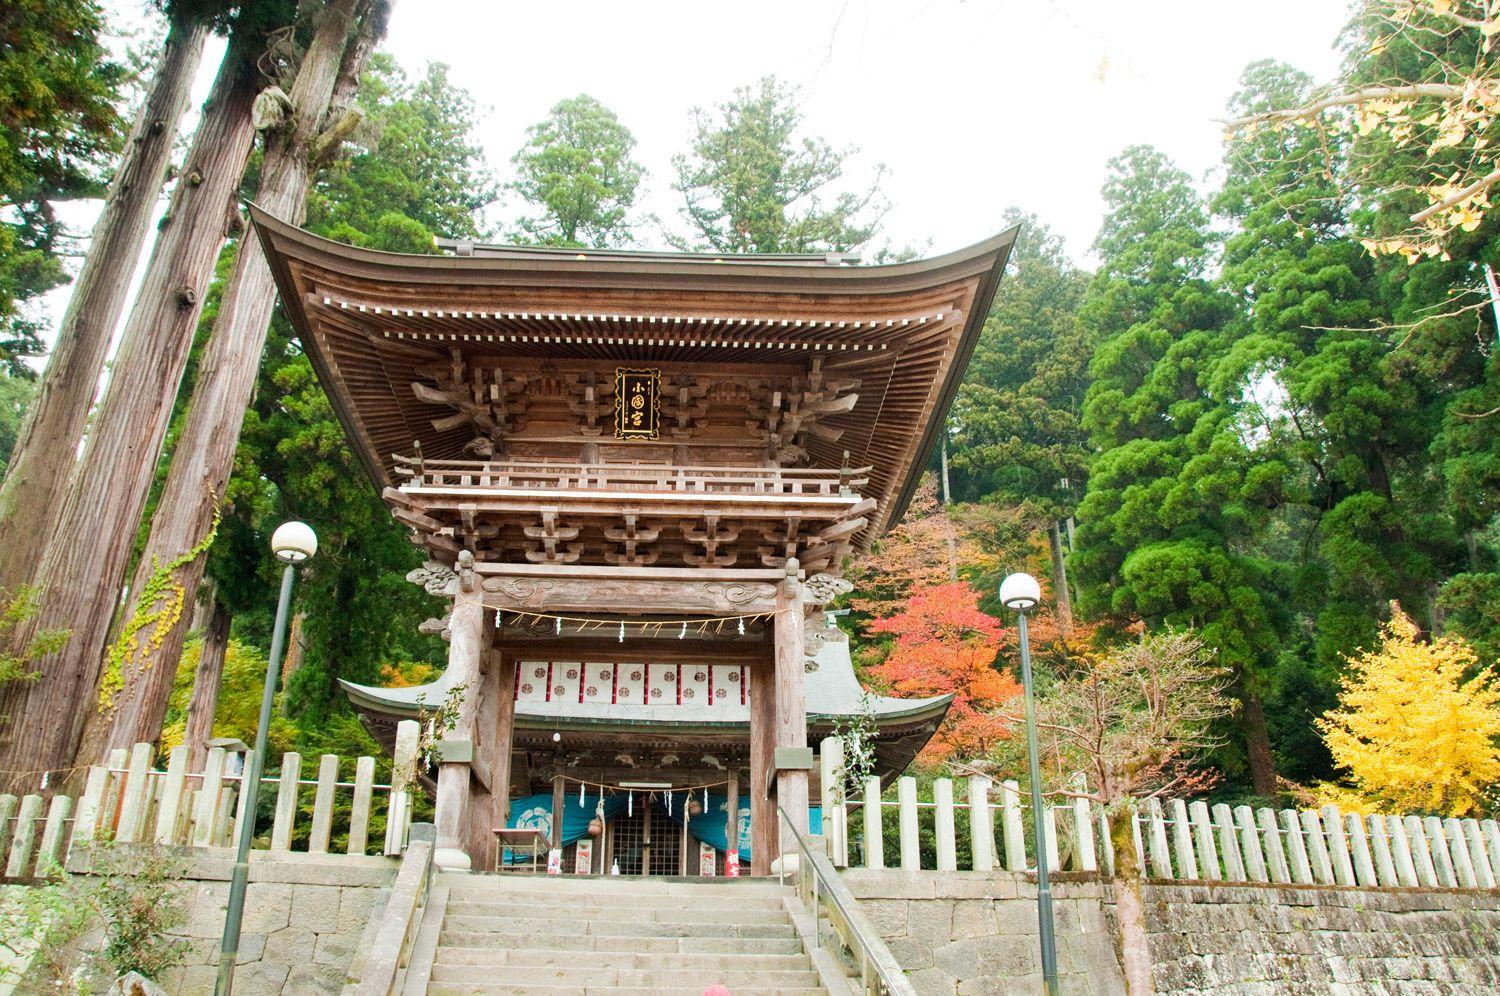 小国両神社 観光地 公式 熊本県観光サイト もっと もーっと くまもっと